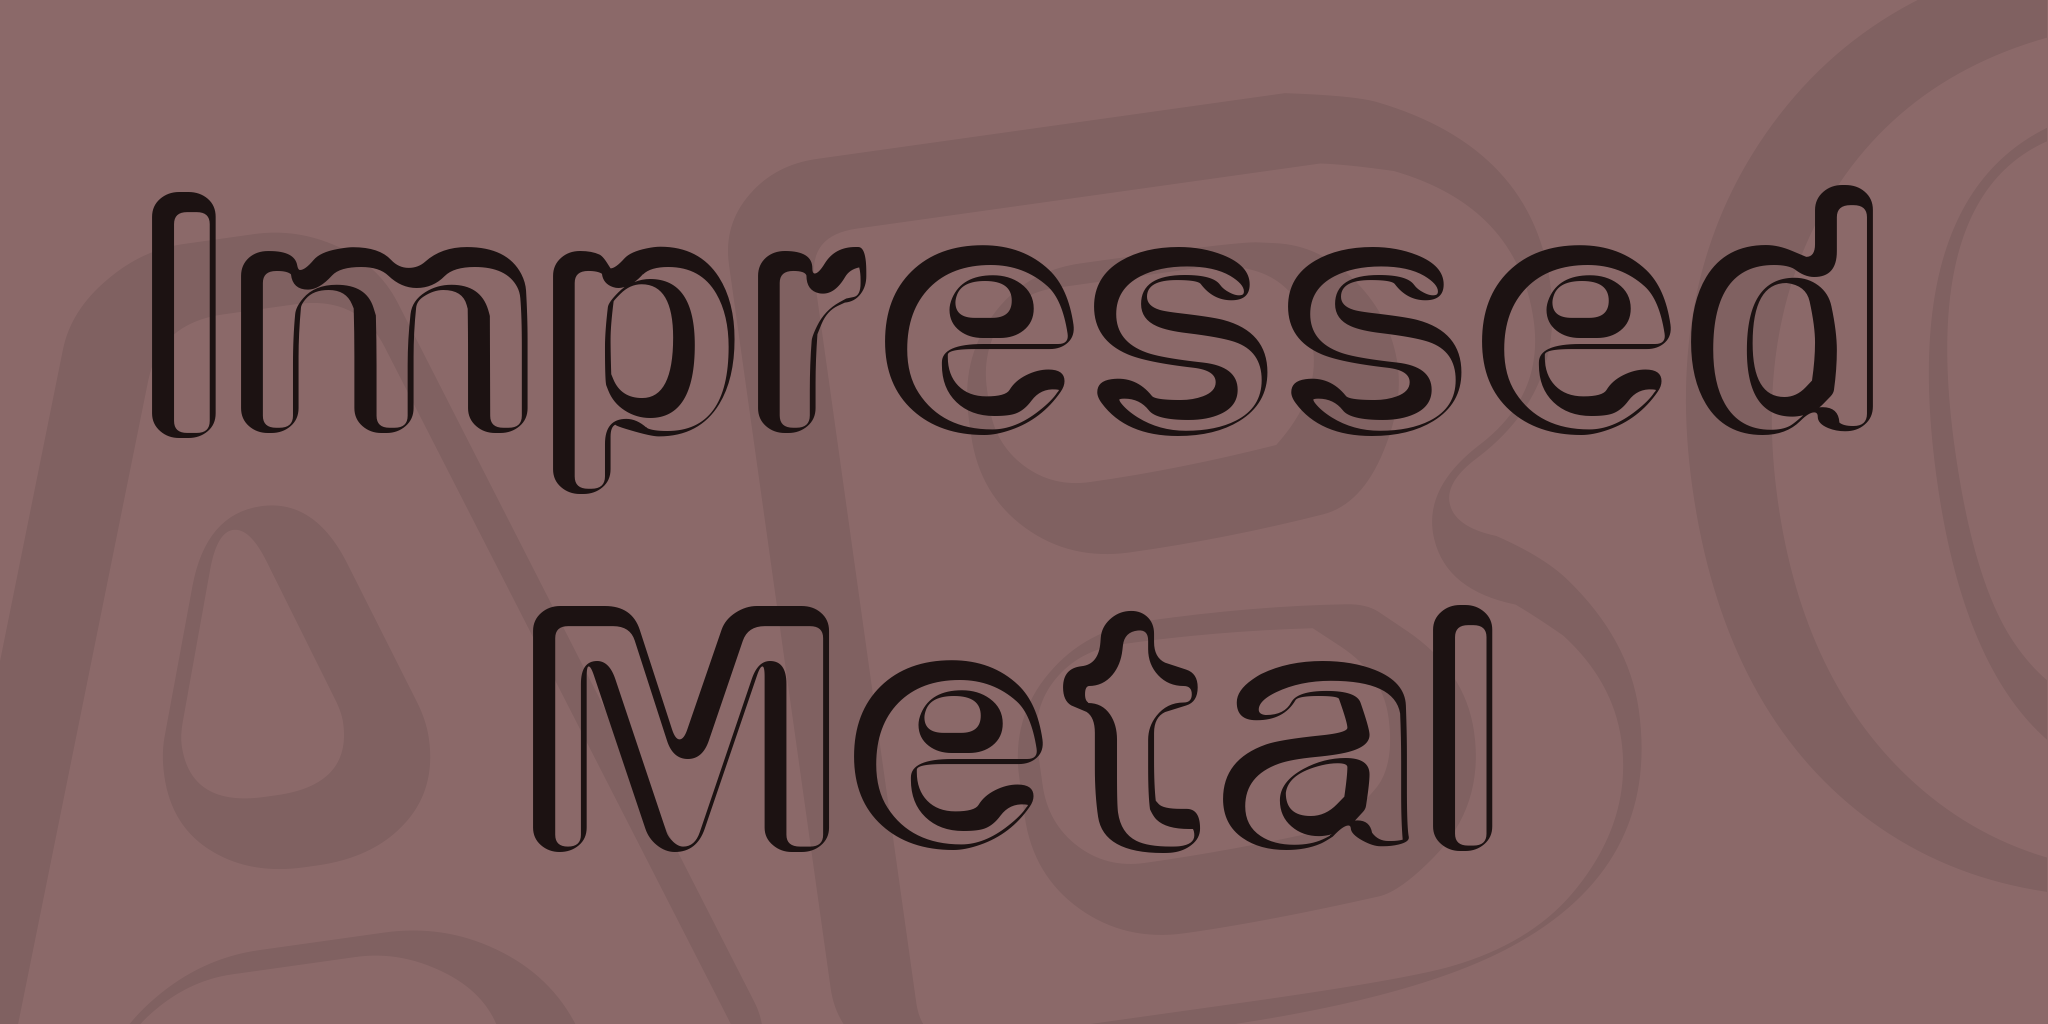 Impressed Metal